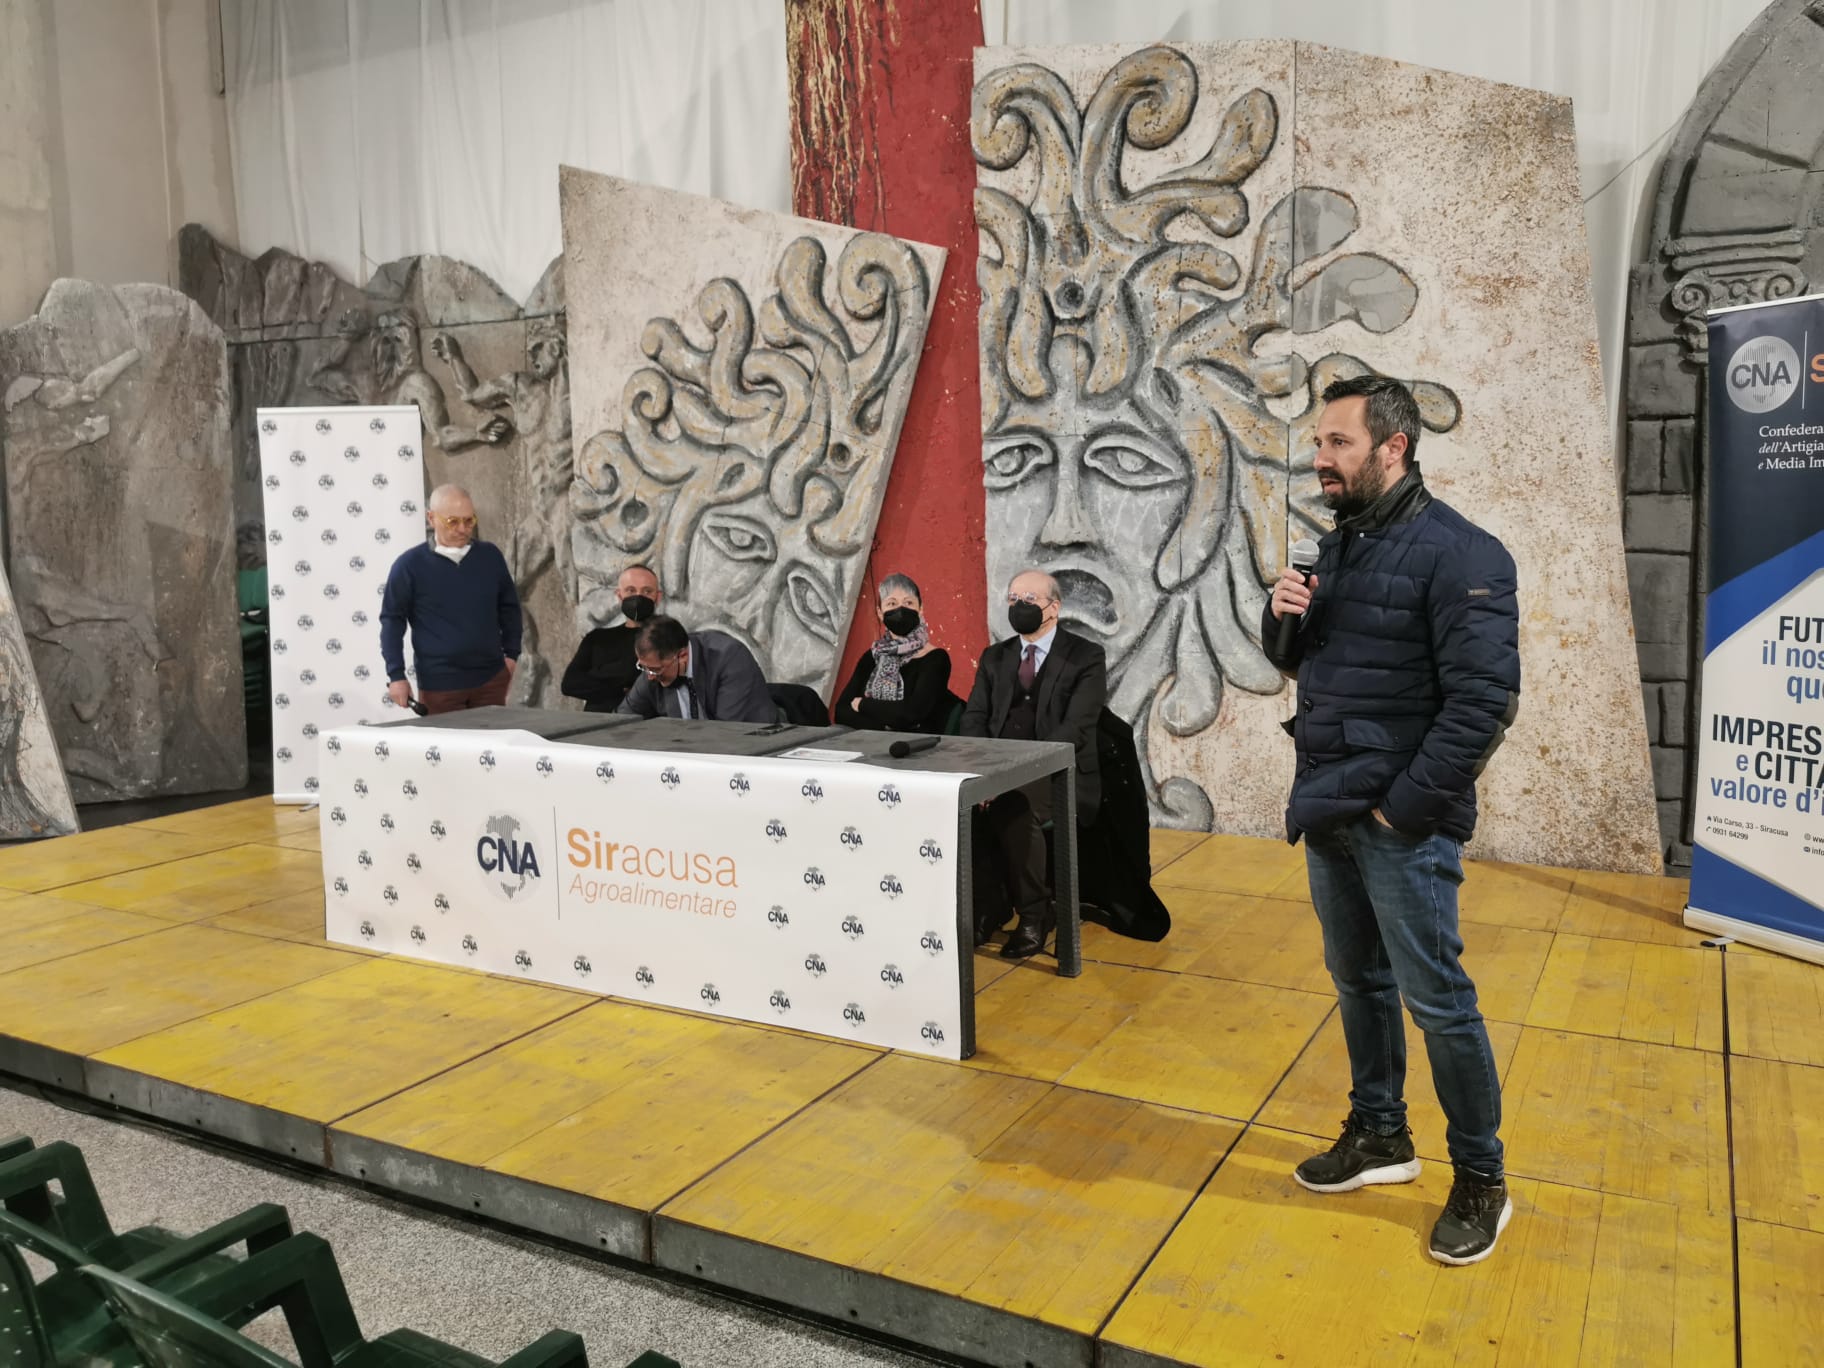 Appuntamenti Agroalimentari, grande successo per il primo incontro organizzato da CNA a Palazzolo Acreide